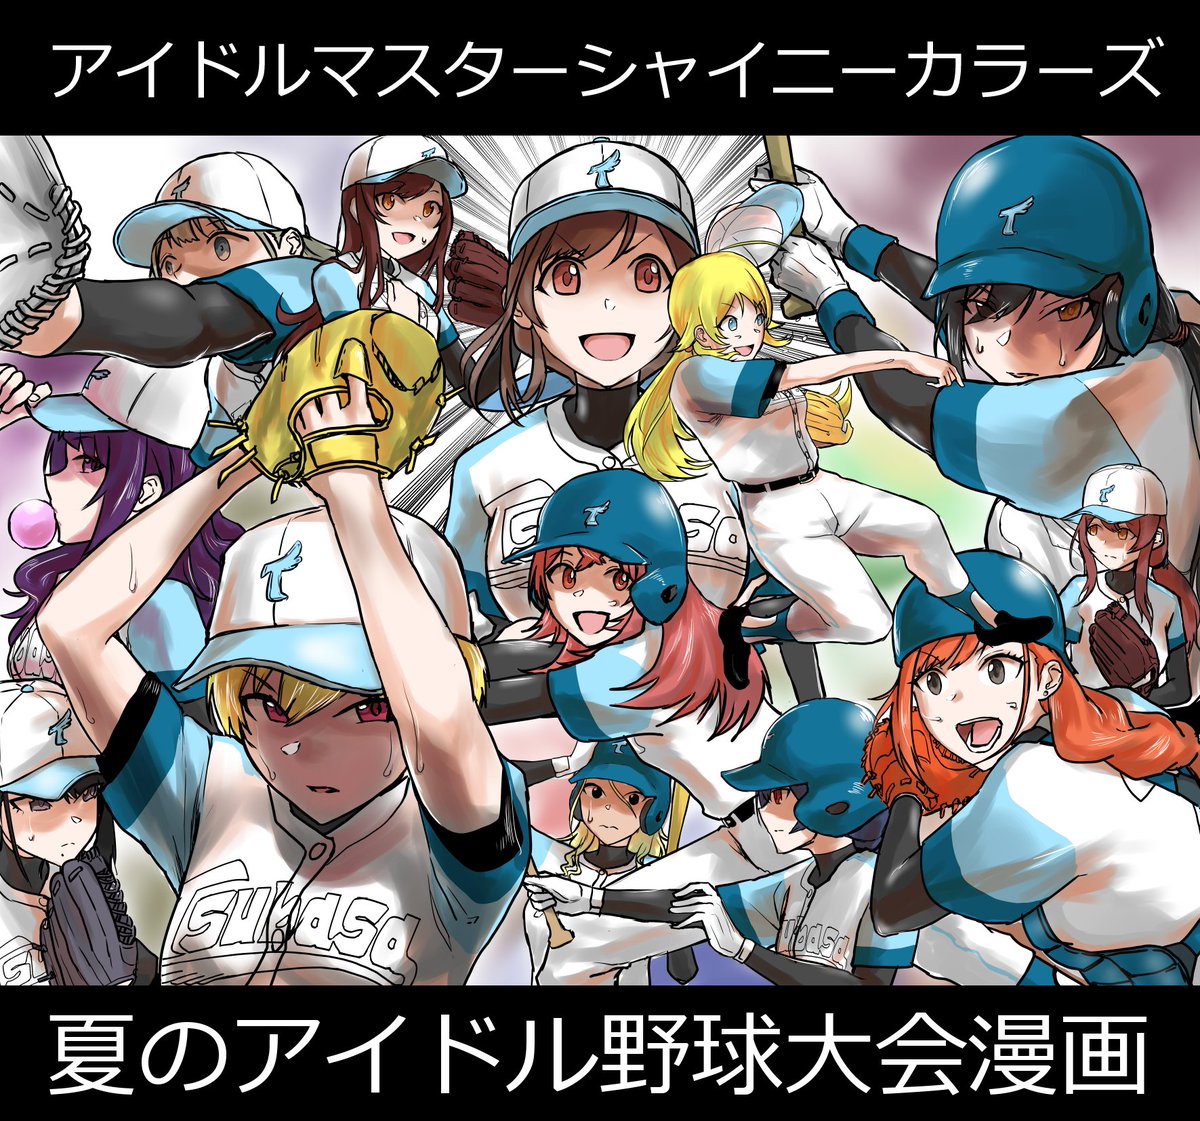 【完結記念再掲】シャニマスアイドル達が野球する漫画
#シャニベス 